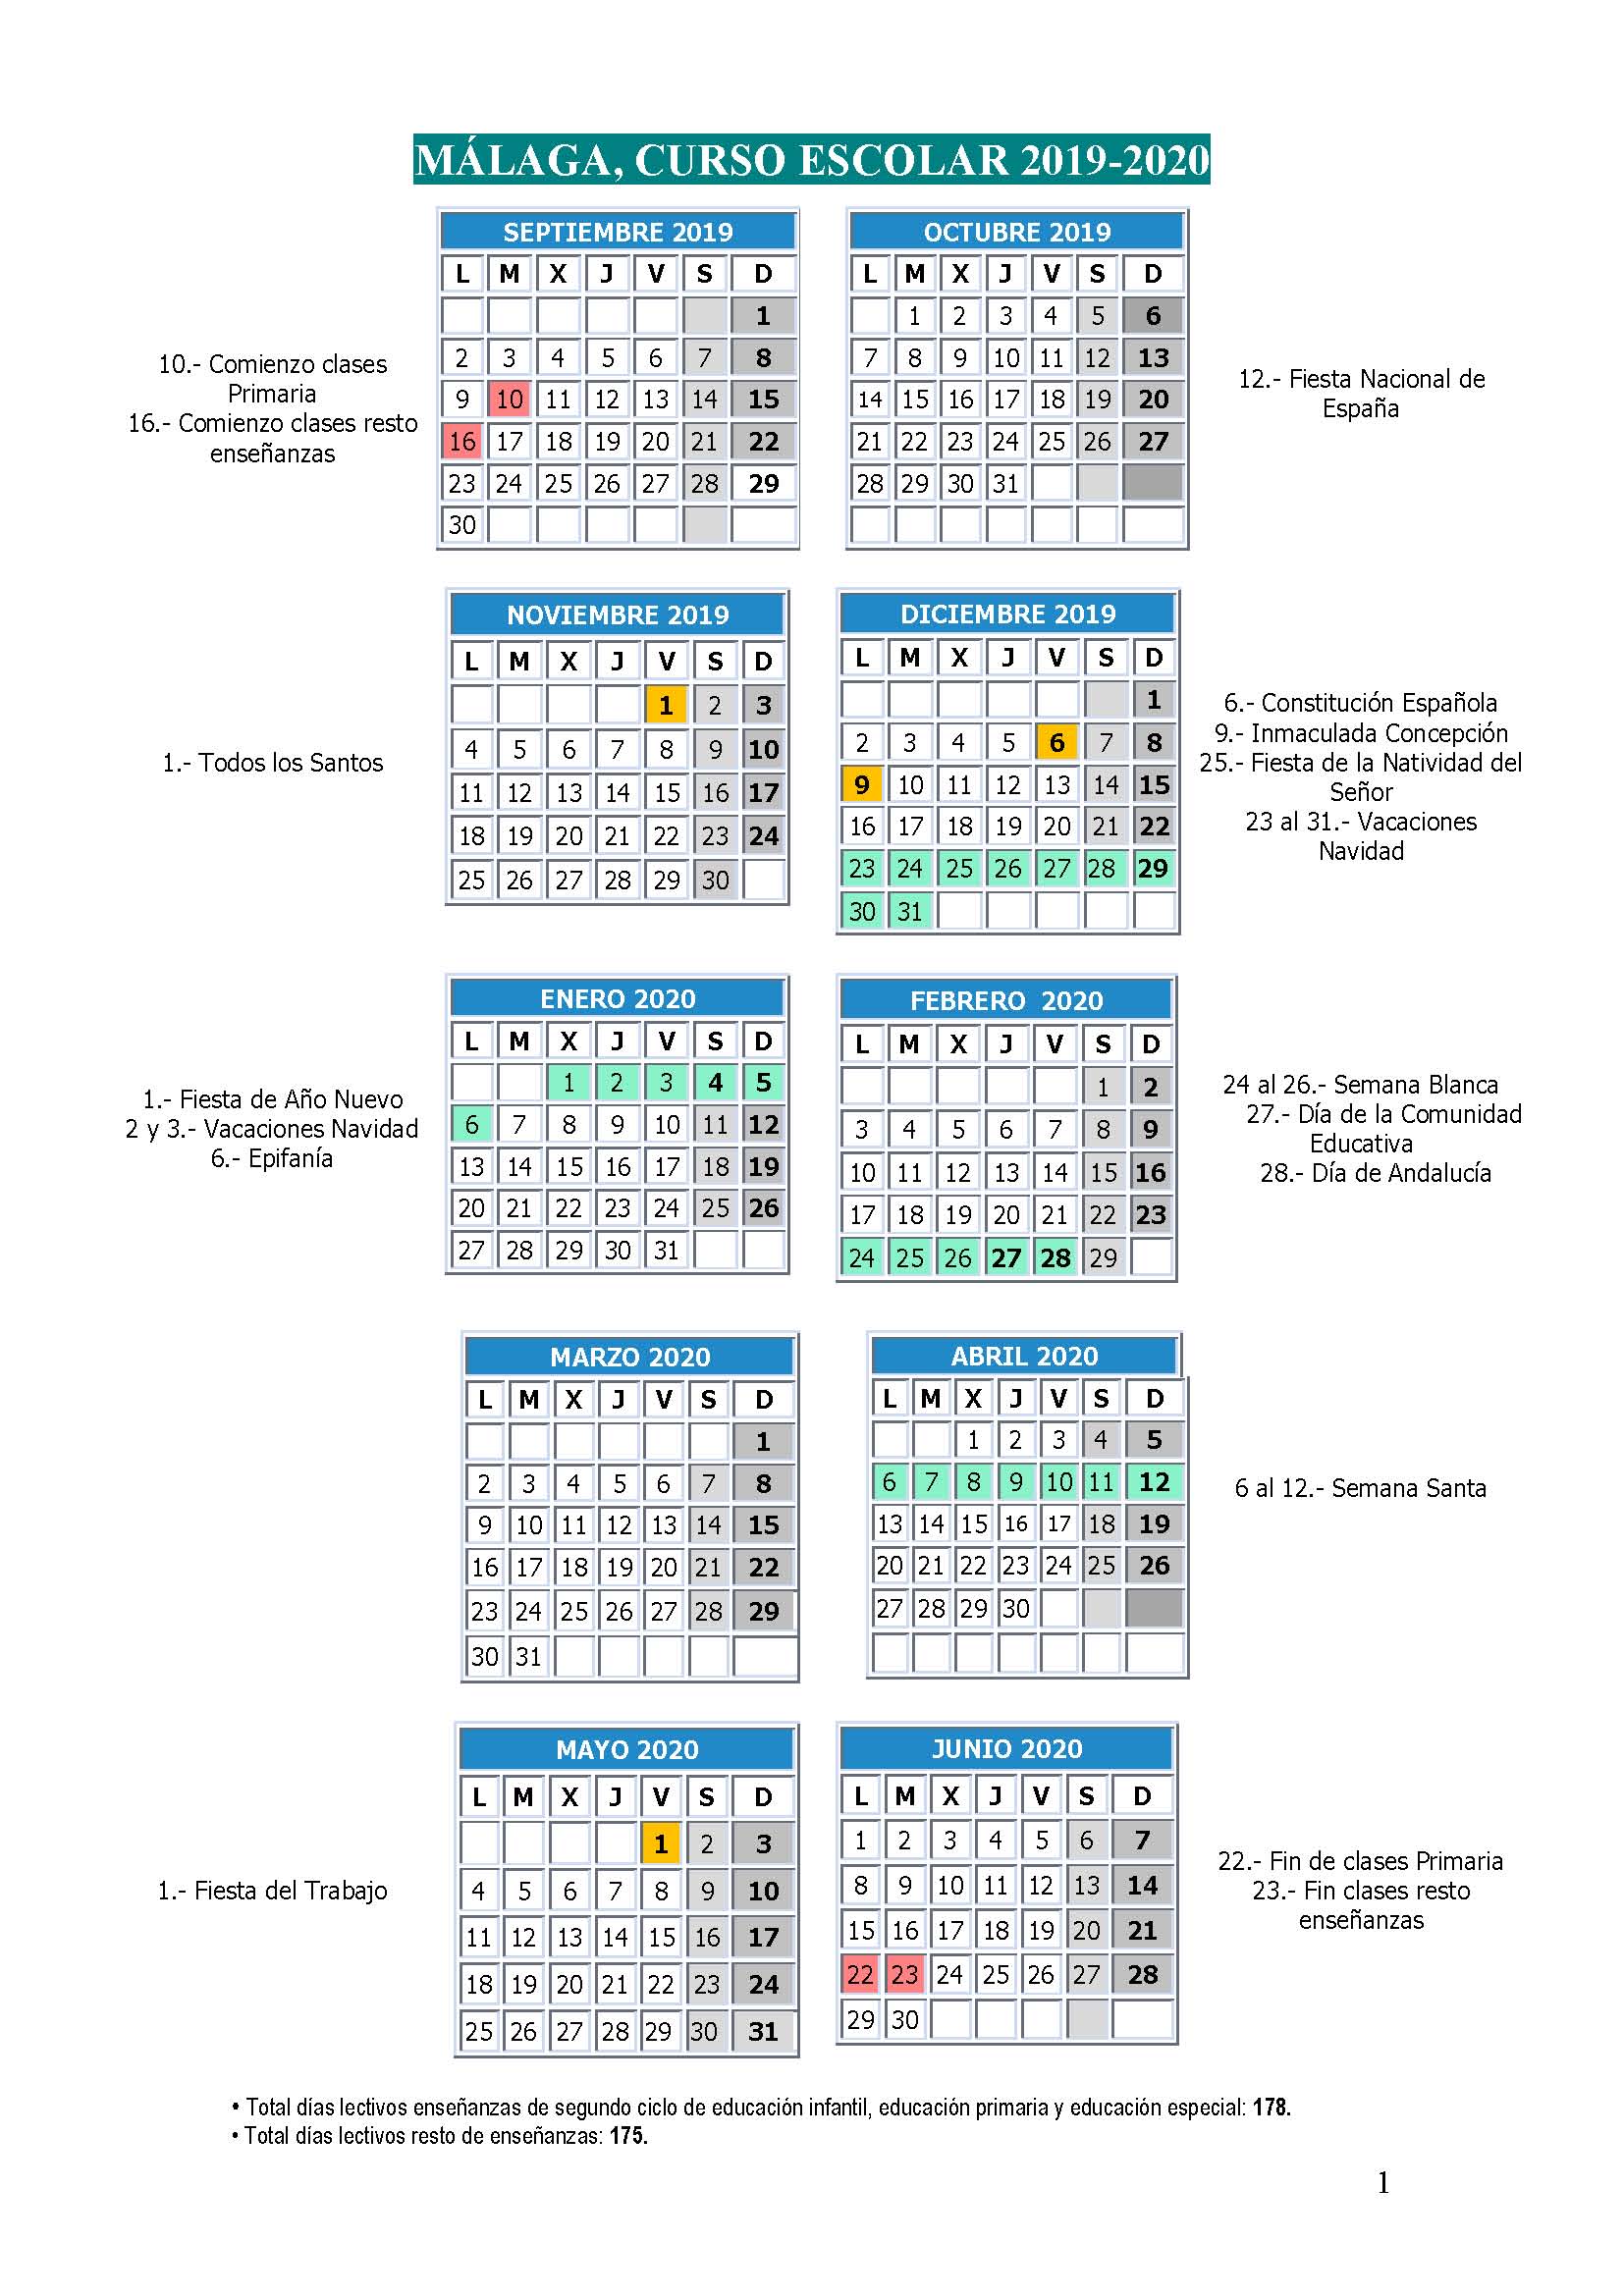 Calendario Escolar curso 2019-2020 | Educando en Málaga